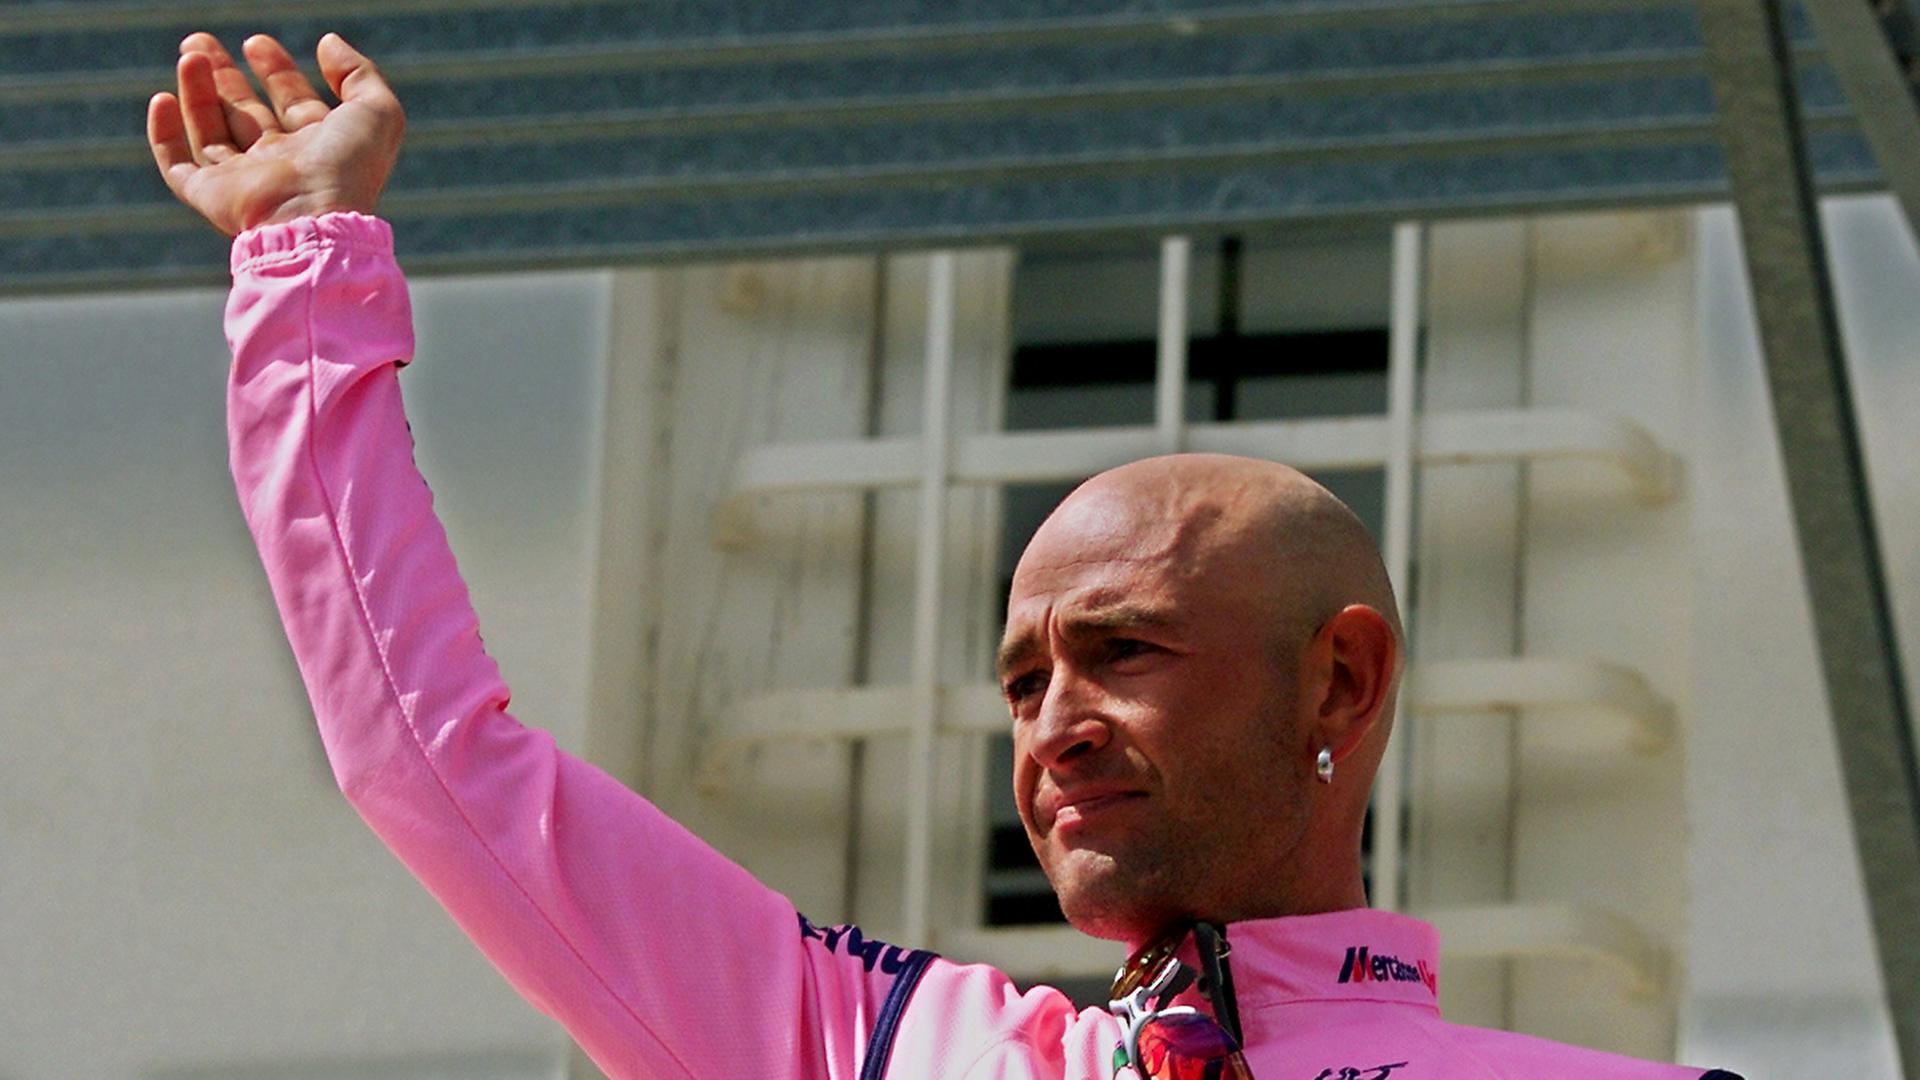 Der italienische Radprofi im Jahrf 2000 nach der 12. Etappe der Tour de France.